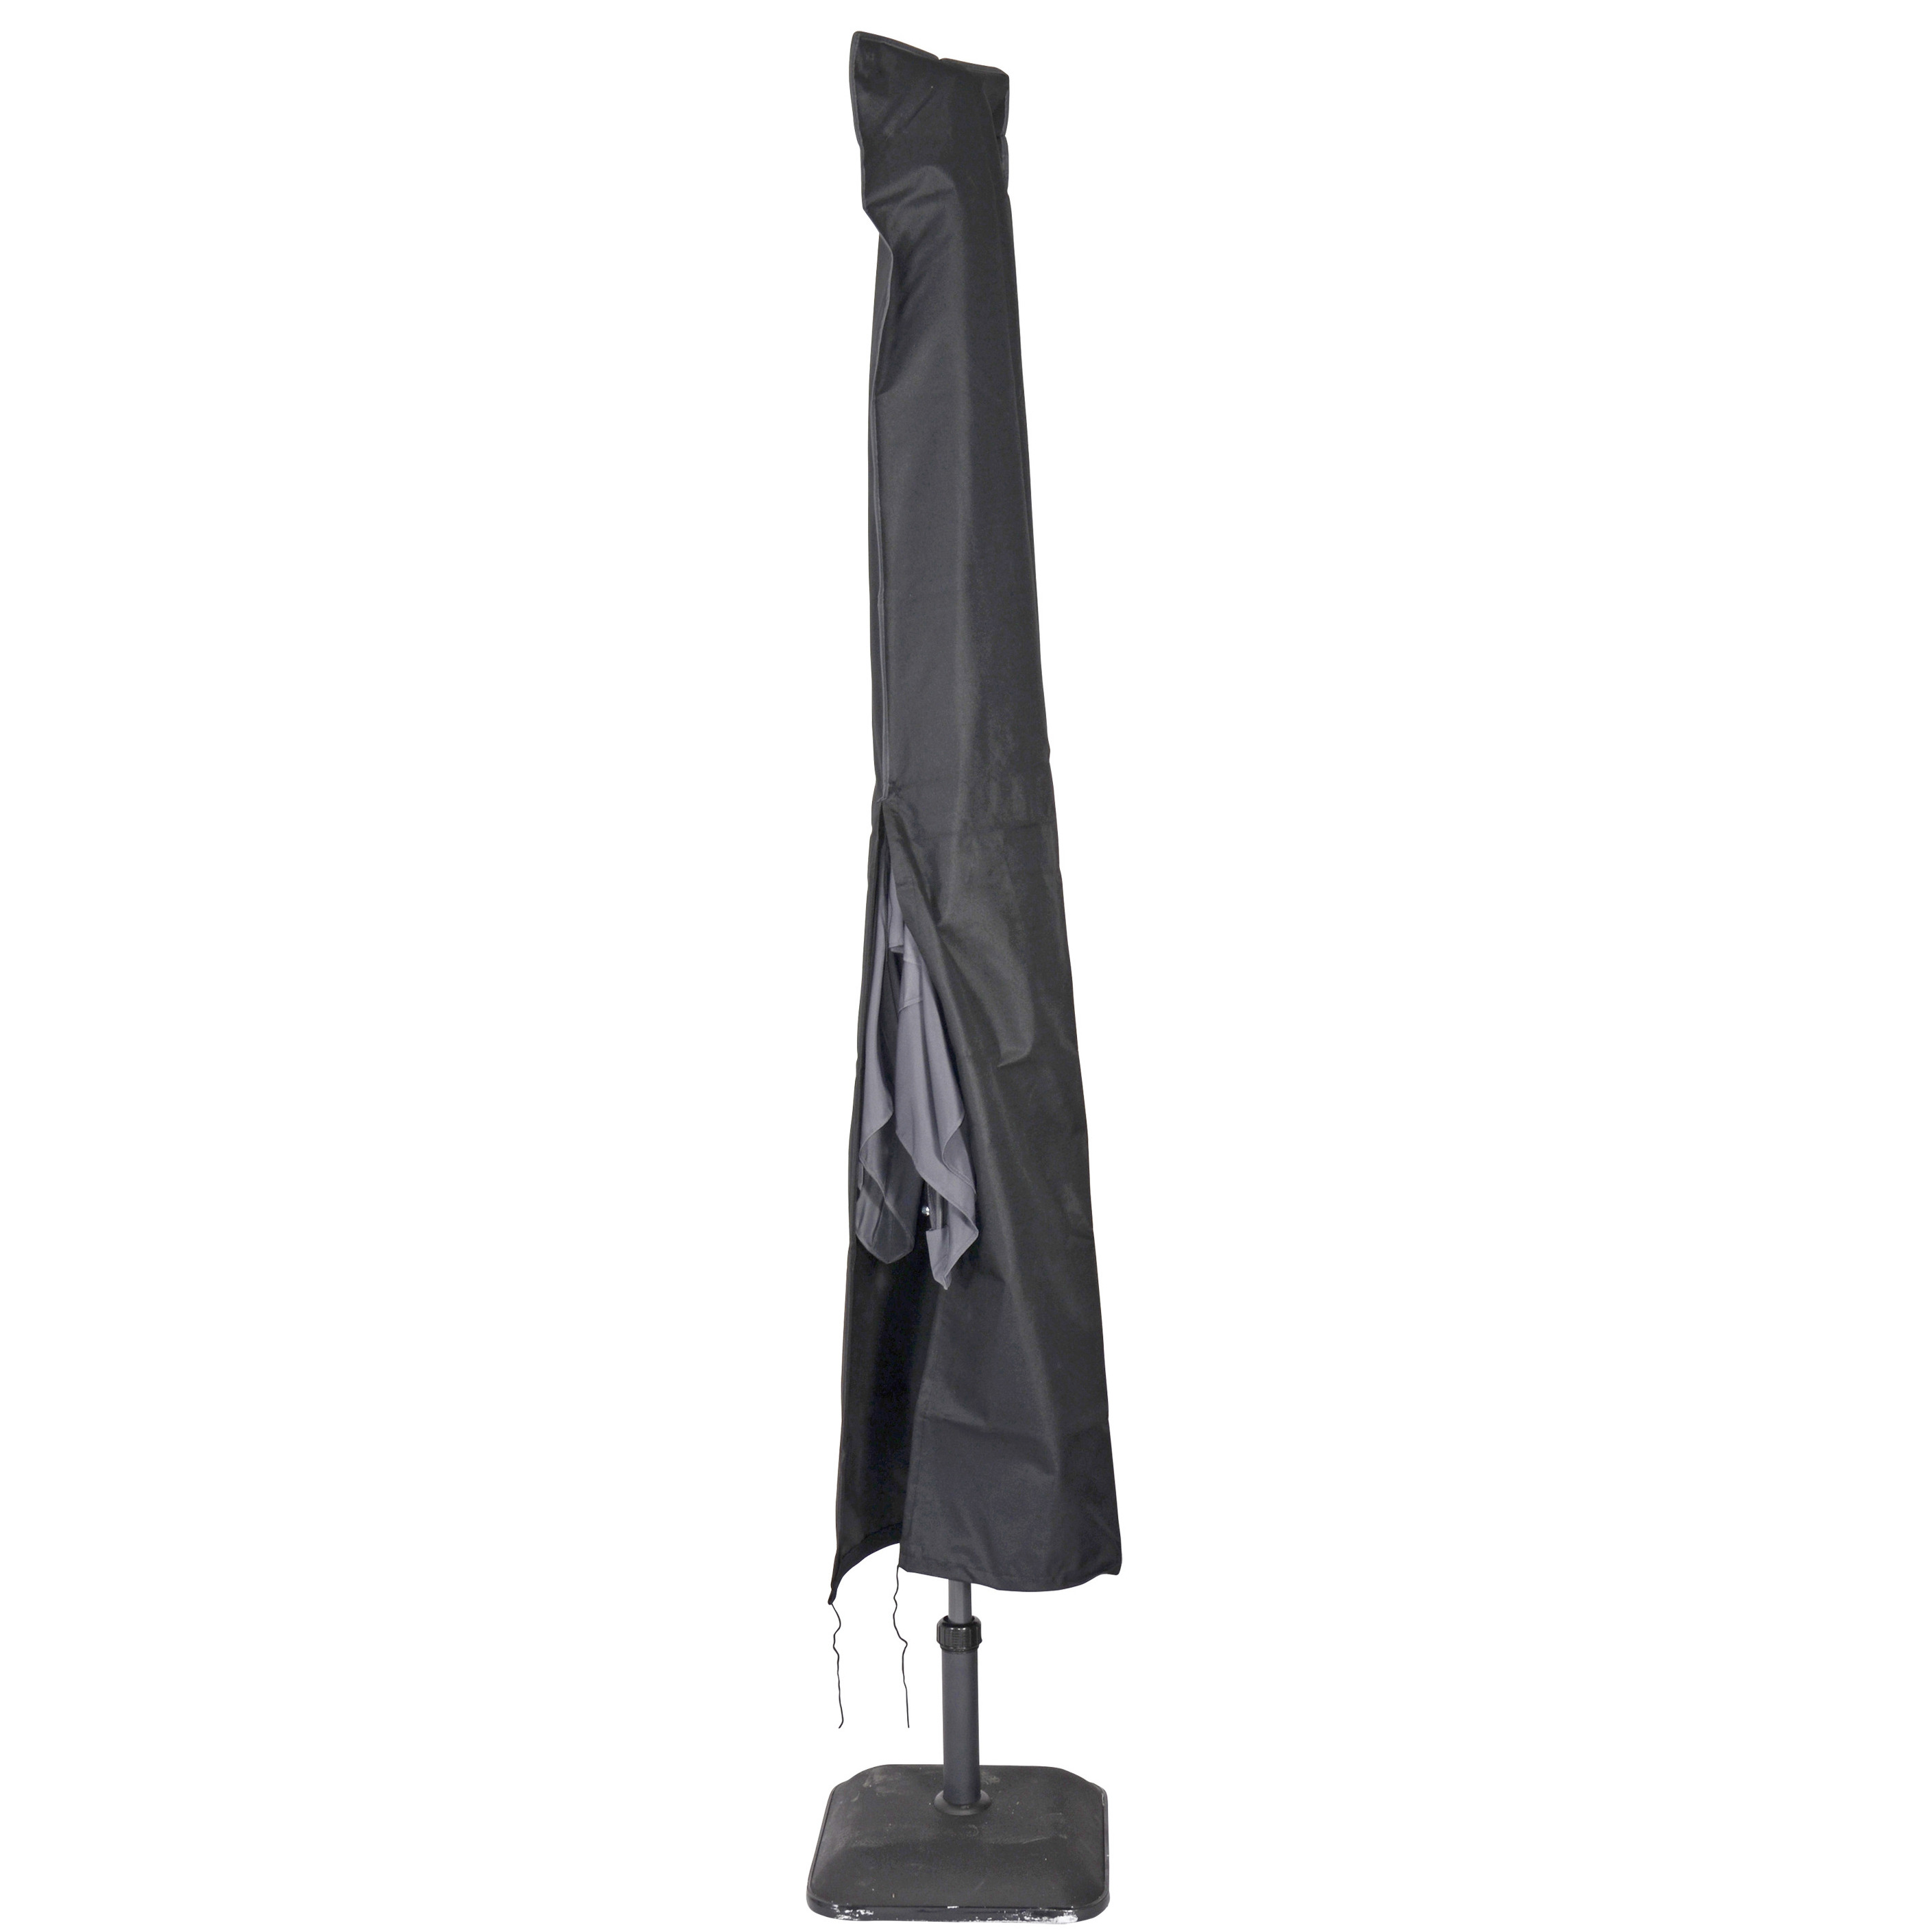 Afdekhoes / beschermhoes zwart voor parasols met een diameter van 4 m inclusief stok